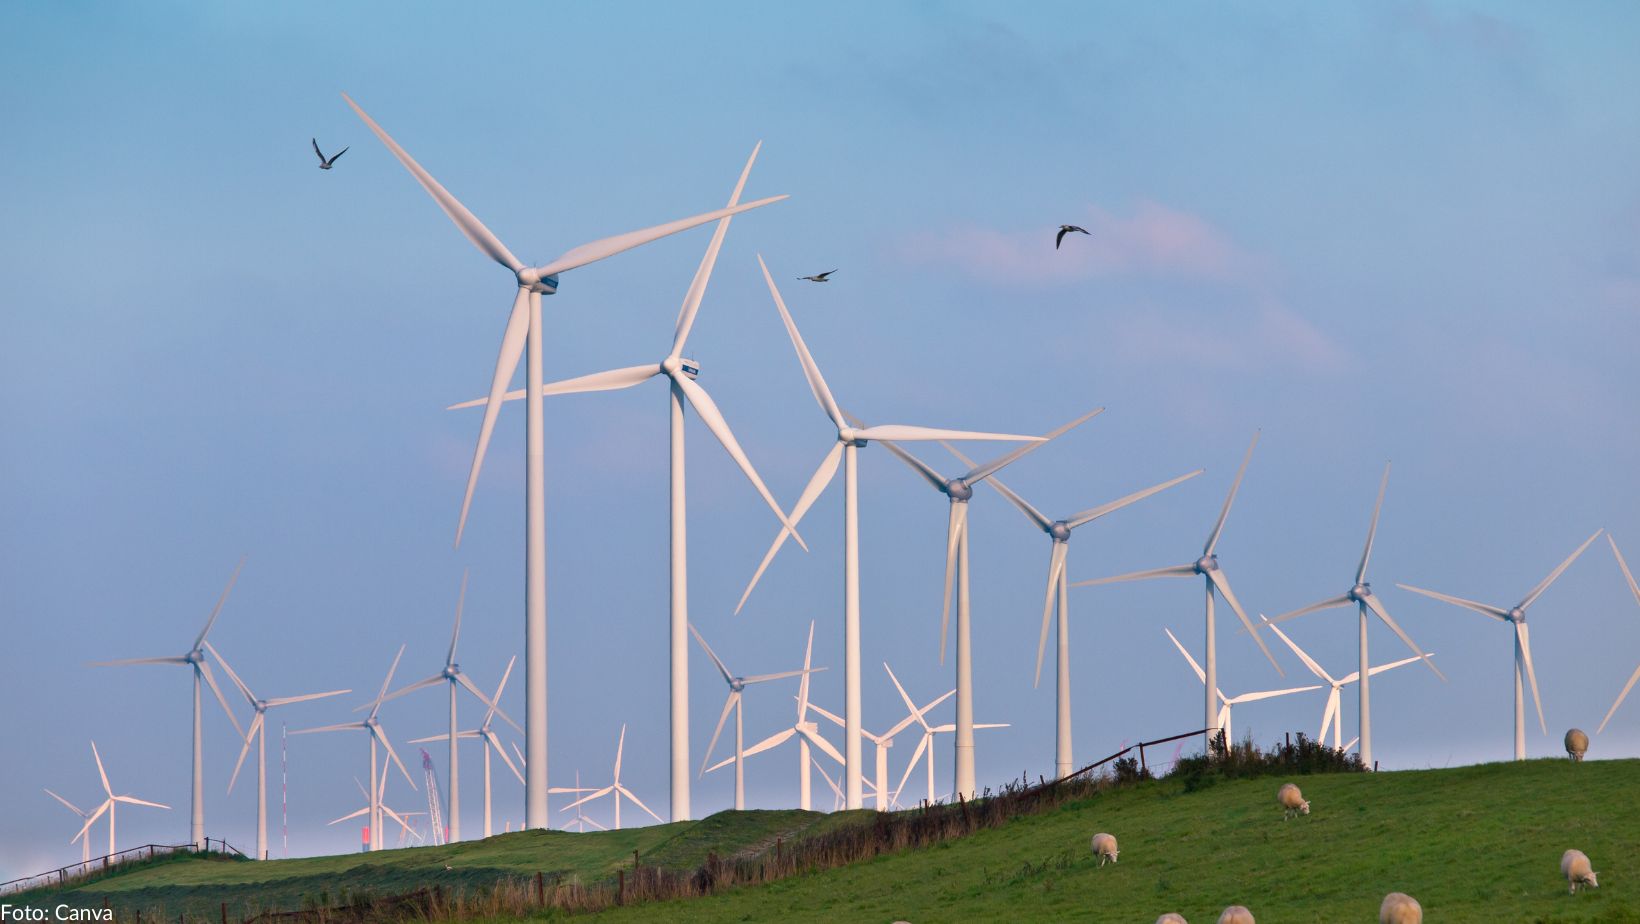 Symbolbild für Faktencheck Windenergie: Man sieht mehrere Windräder auf einer grünen Wiese vor bewölktem Himmel, mit Schafen auf der Wiese und Vögeln um die Windräder.